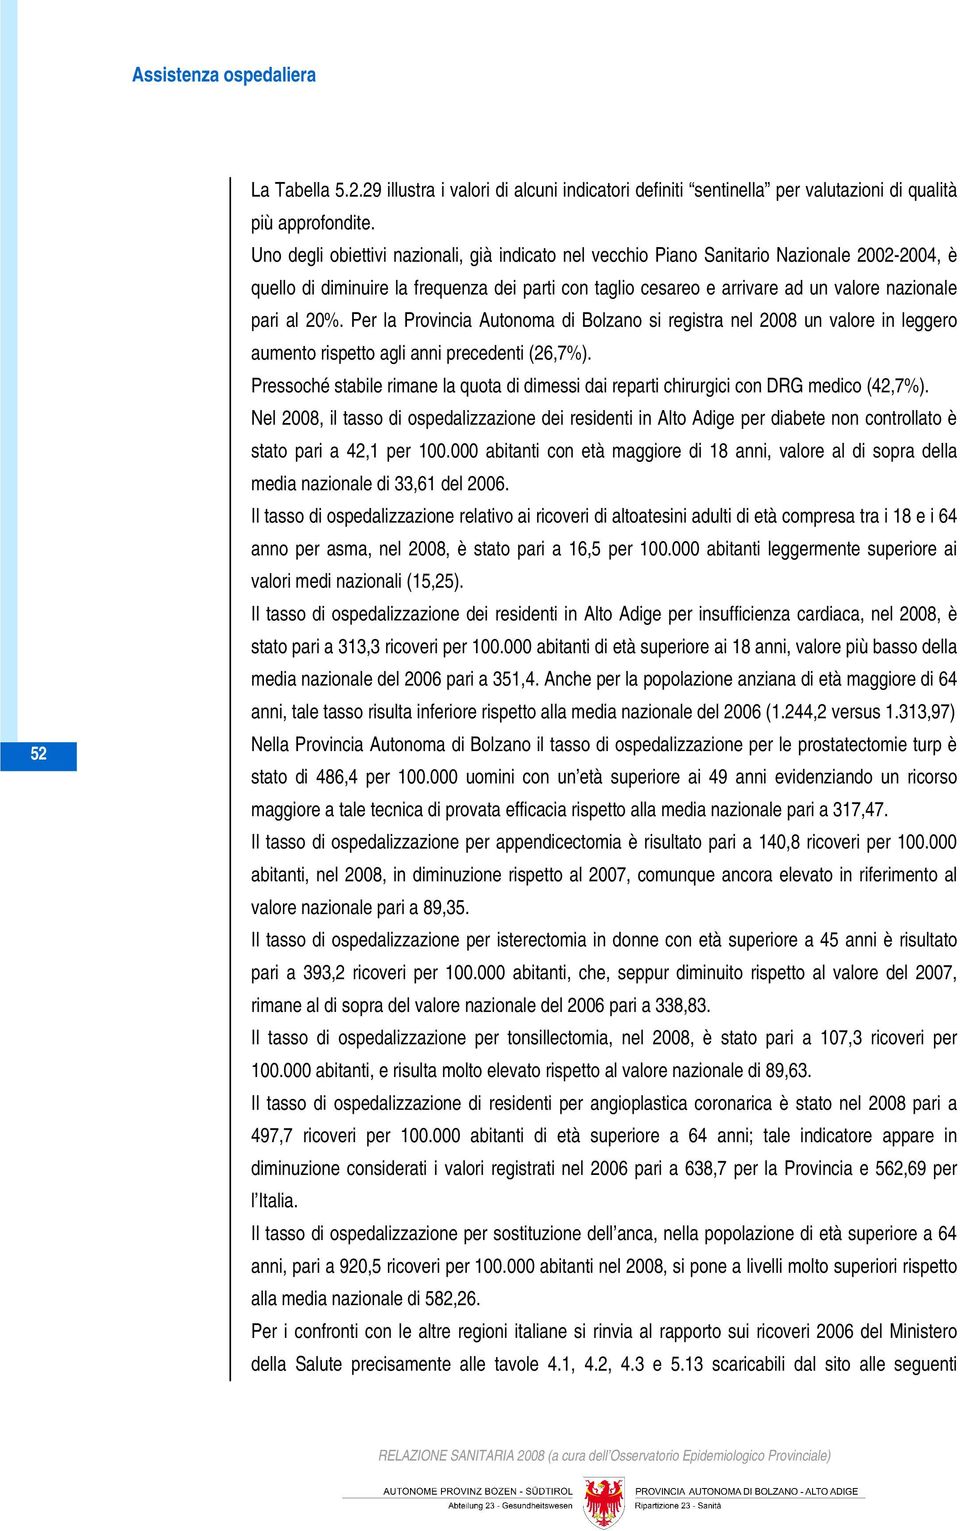 20%. Per la Provincia Autonoma di Bolzano si registra nel 2008 un valore in leggero aumento rispetto agli anni precedenti (26,7%).